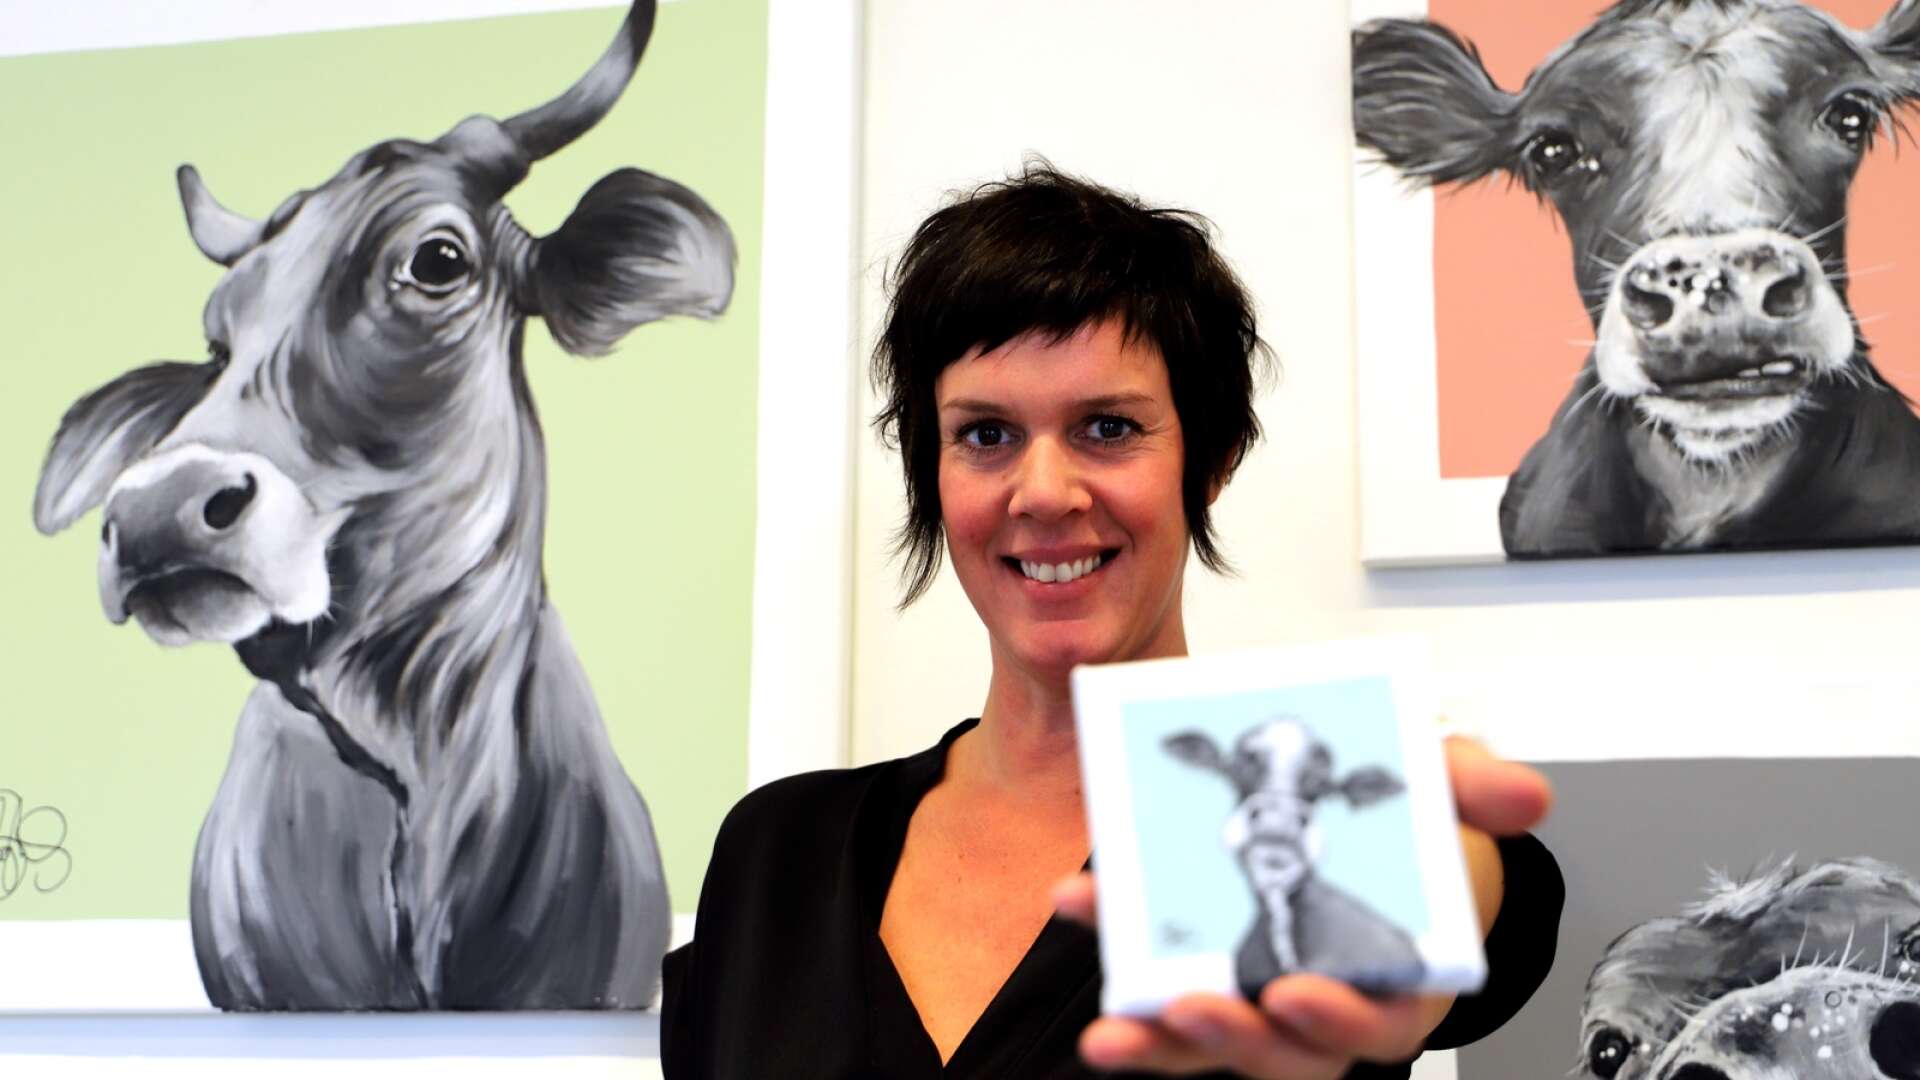 Matilda Skoglund från Stockholm har specialiserat sig på att måla kor. Nu ställer hon ut en hel flock av kossor, kvigor och kalvar hos Galleri Ekdahl. Utställningen pågår 24 september till 9 oktober.